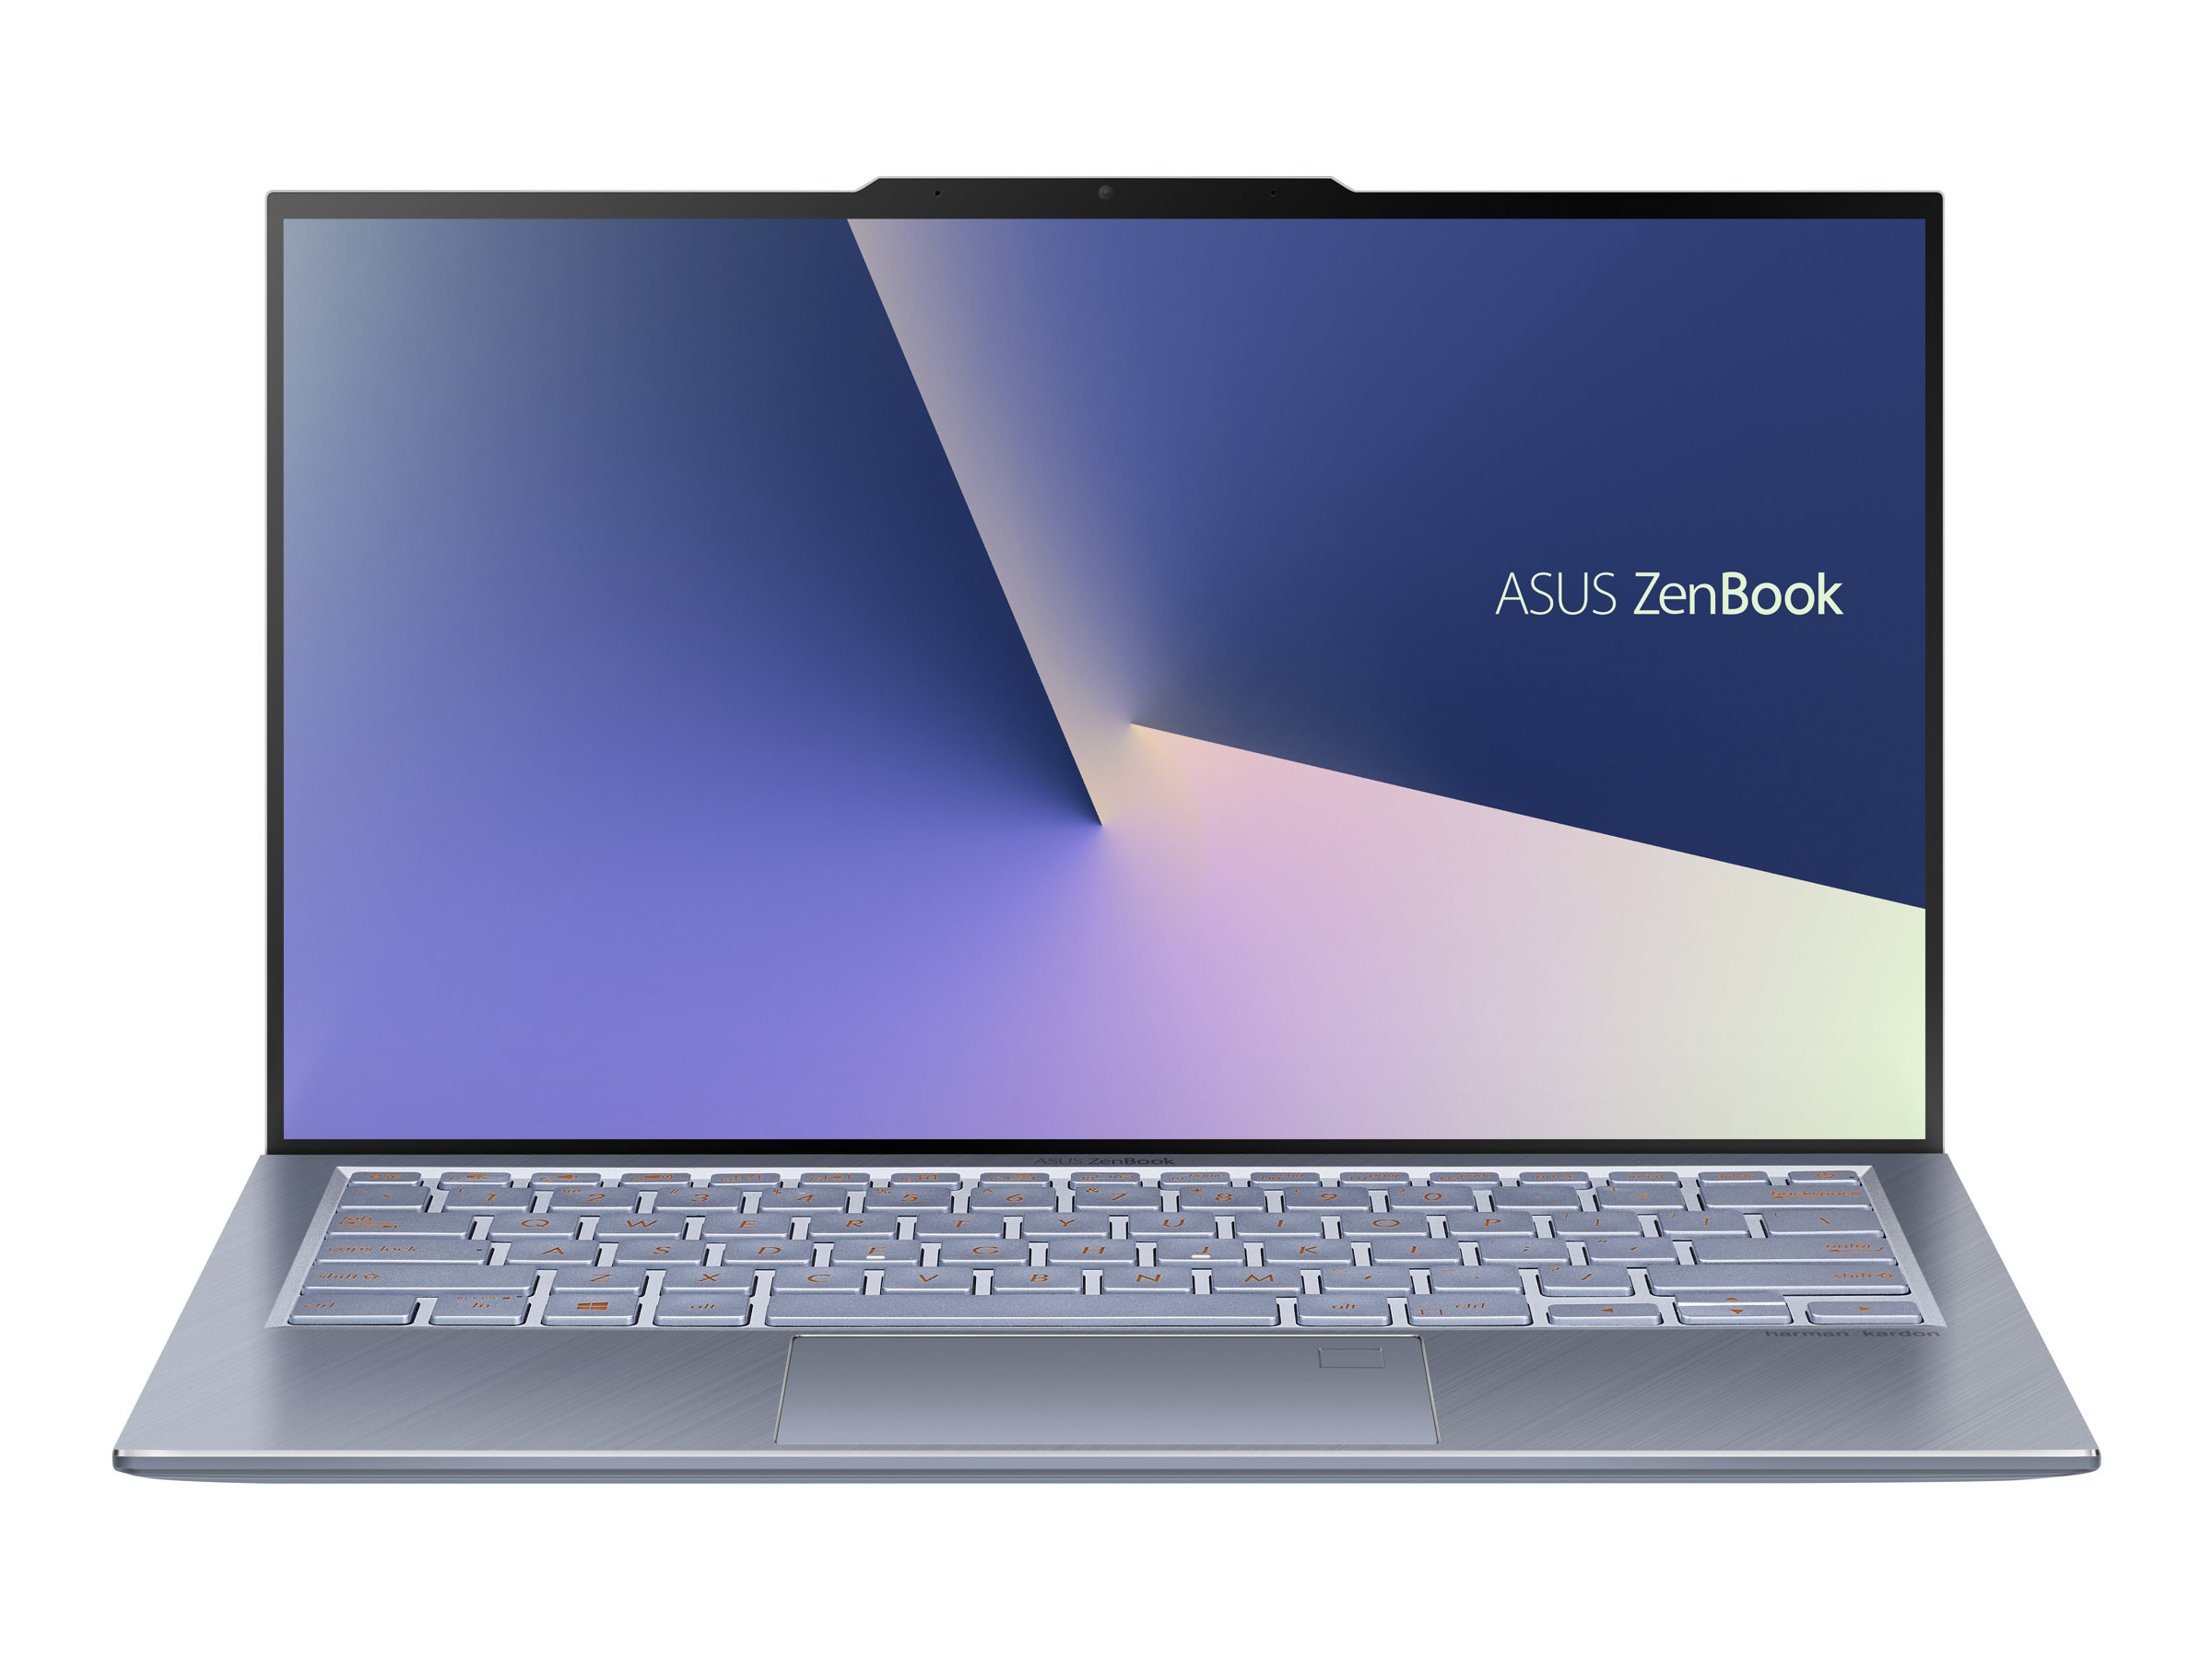 ASUS ZenBook S13 UX392FN (AB006R)